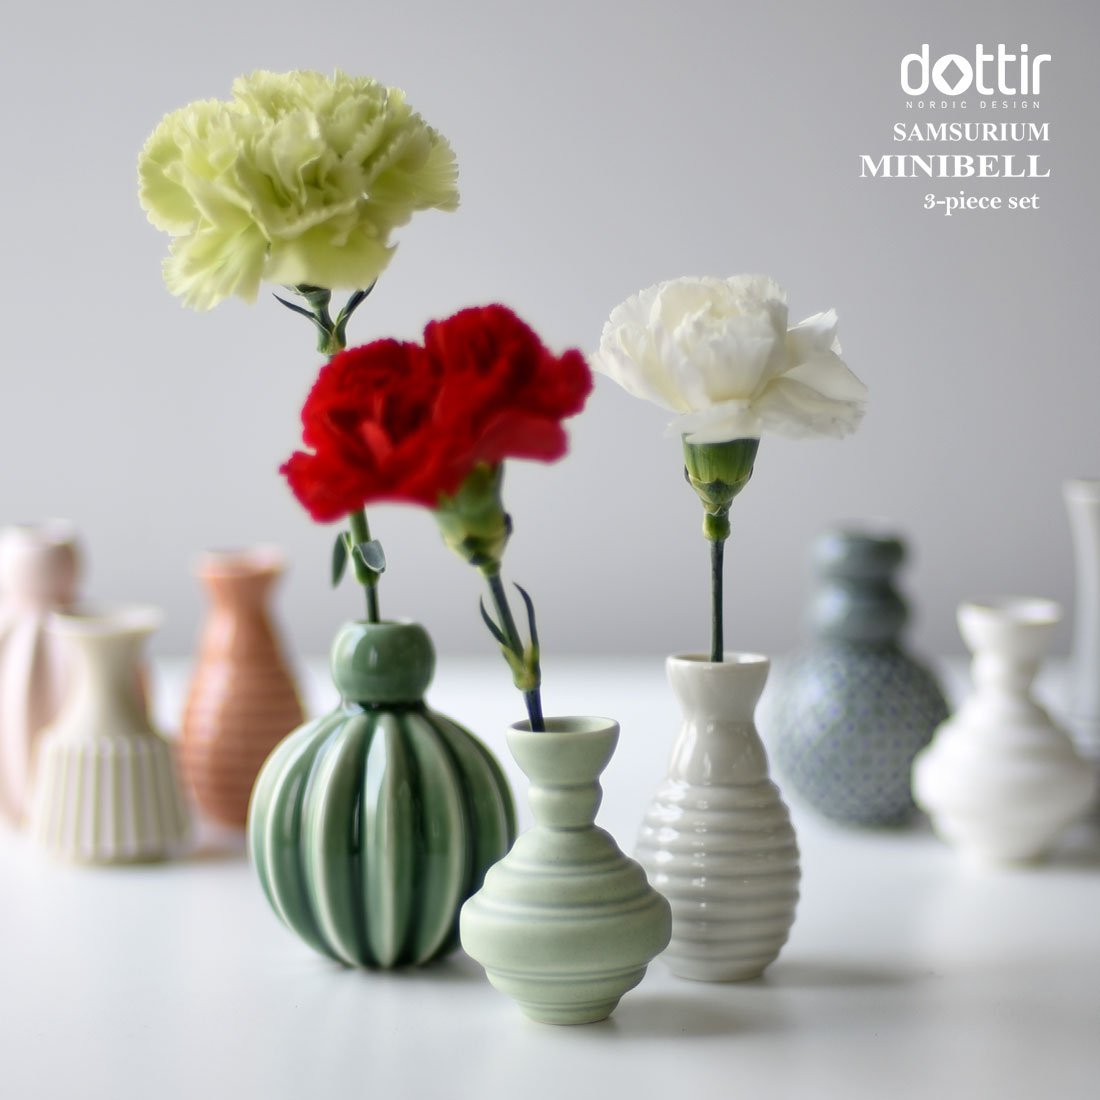 Dottir Samsurium Minibell花瓶集，珊瑚